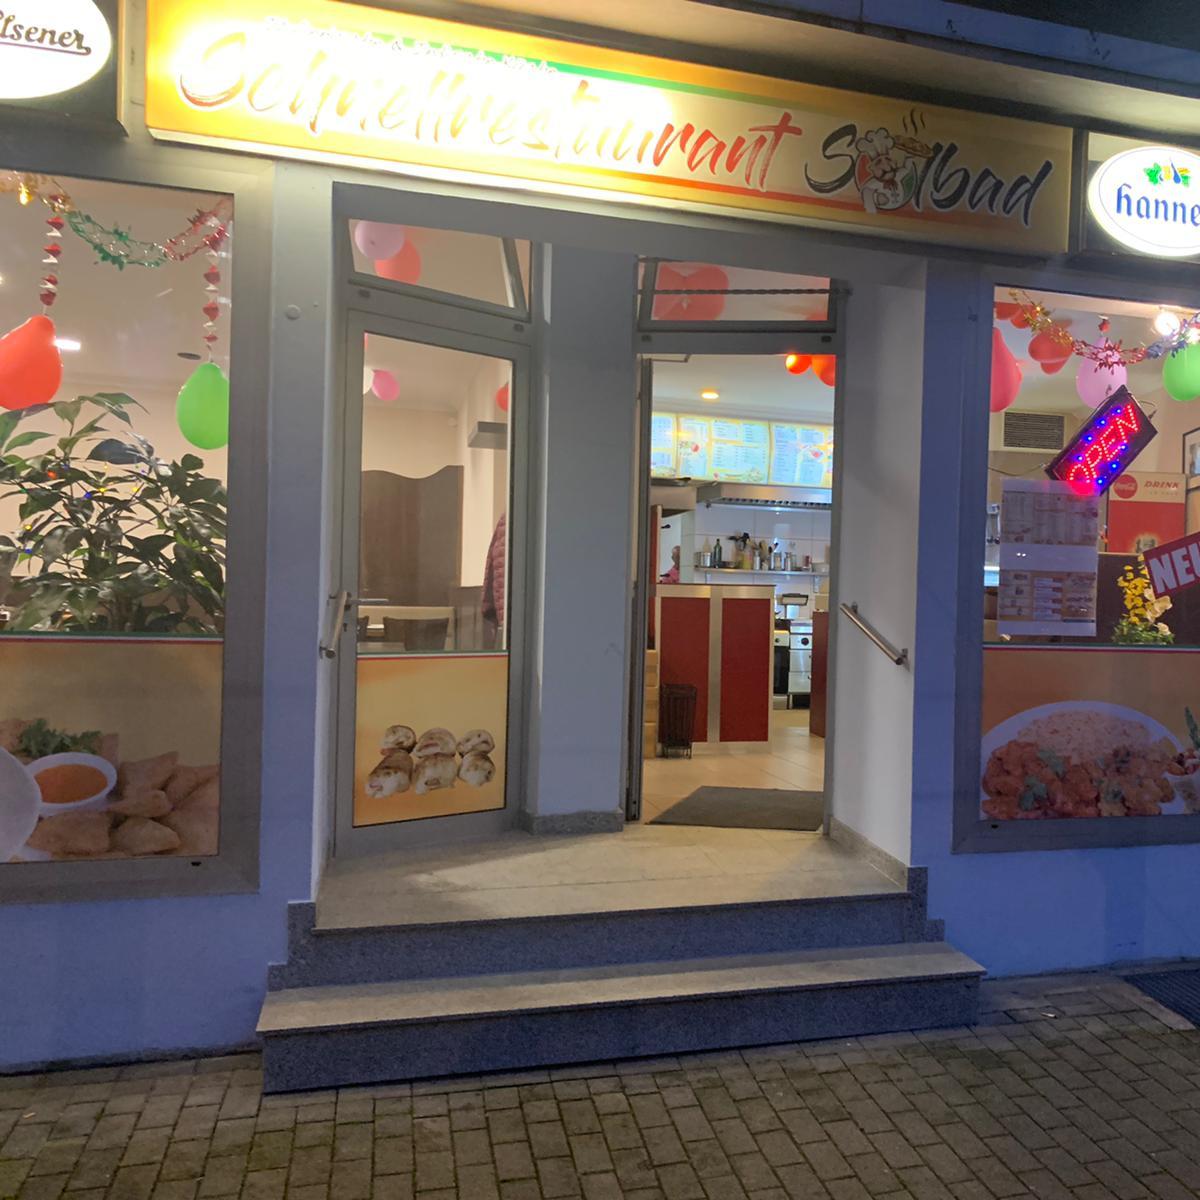 Restaurant "Schnellrestaurant Solbad" in Herne